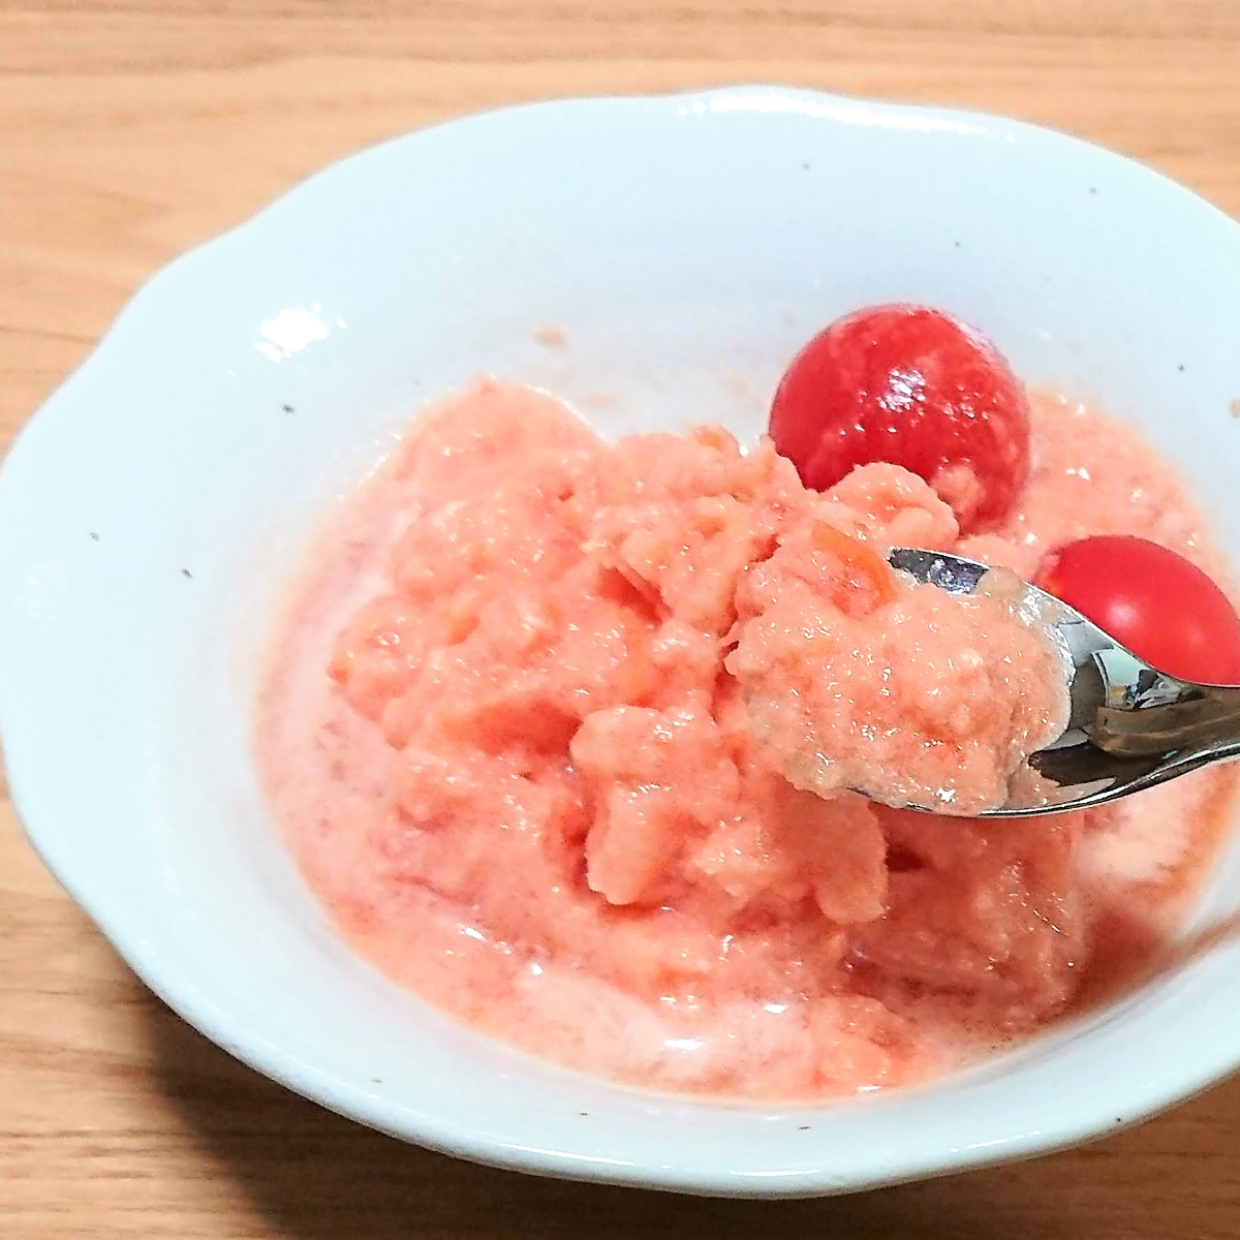  冷凍トマトをすりおろす！？【めざましテレビ】で紹介されたトマトのシャーベットを作ってみたところ… 